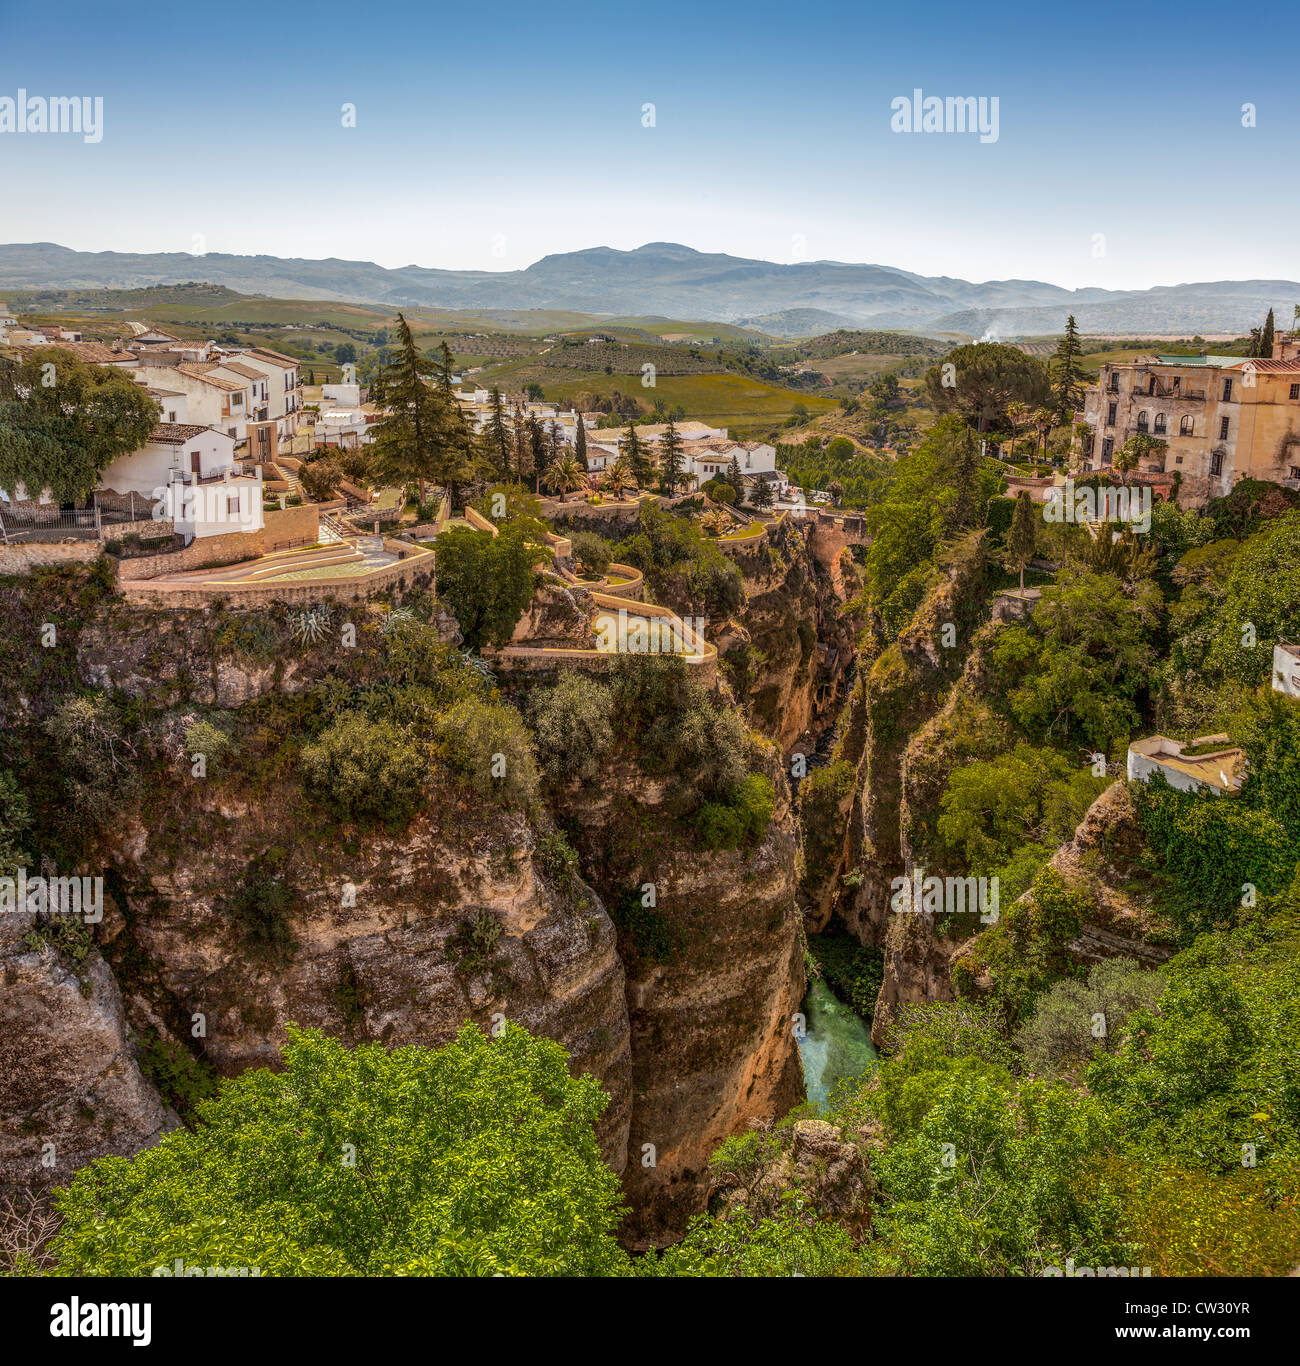 Ronda, Andalusien, Spanien, Europa. Berühmte malerische Stadt mit einer tiefen Tal Schlucht des Flusses Guadalevin. Stockfoto